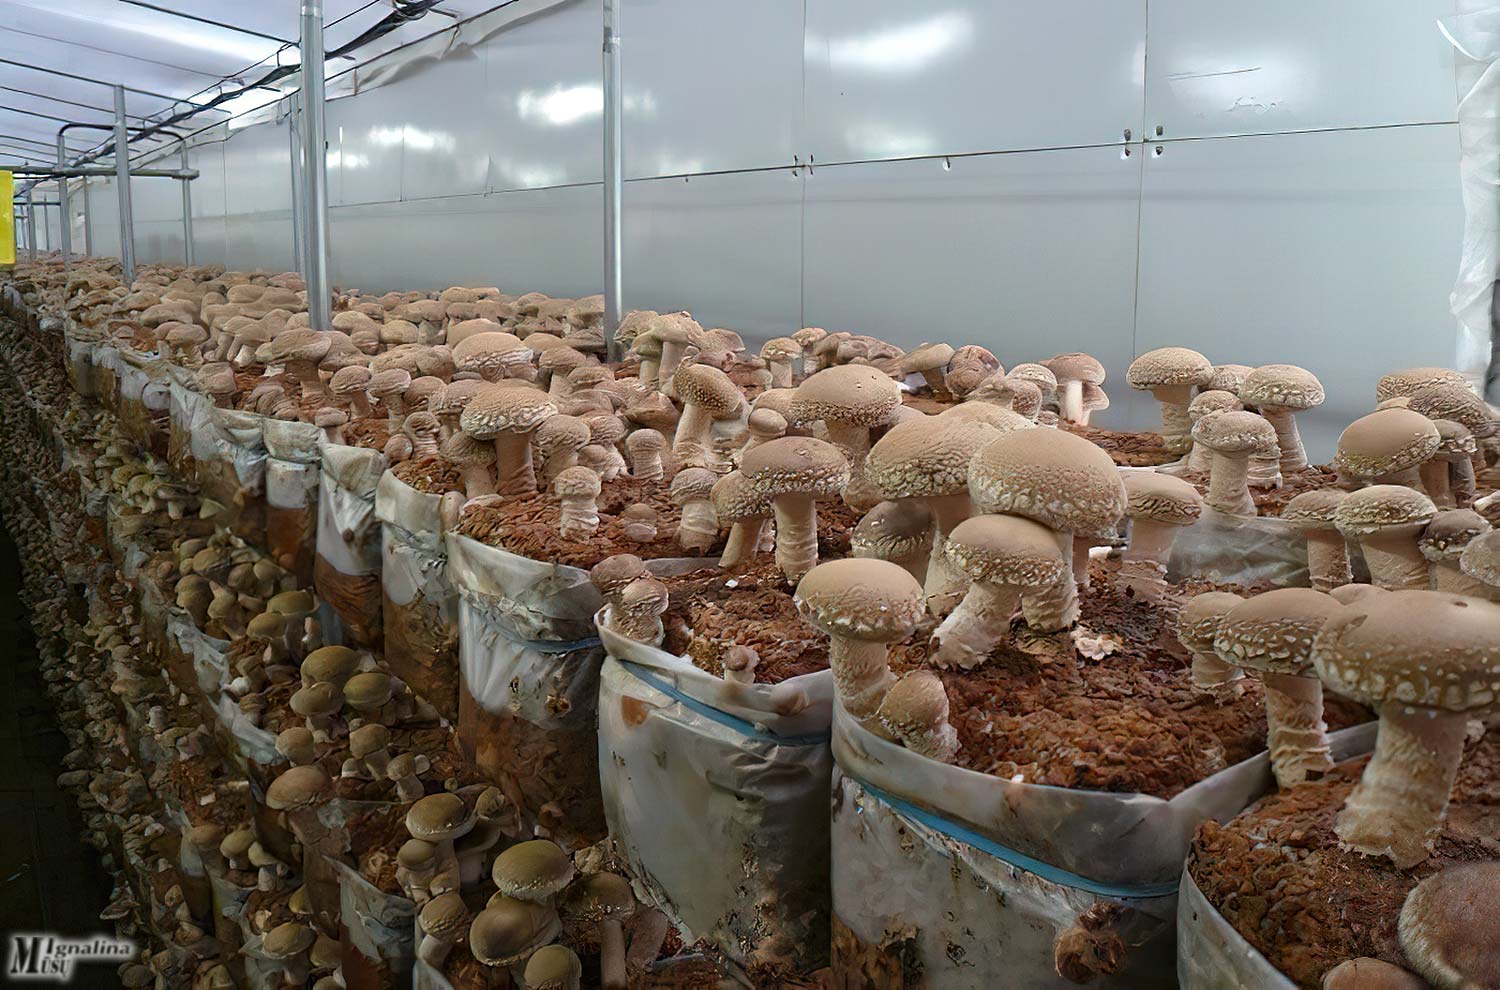 Выращивание грибов технология